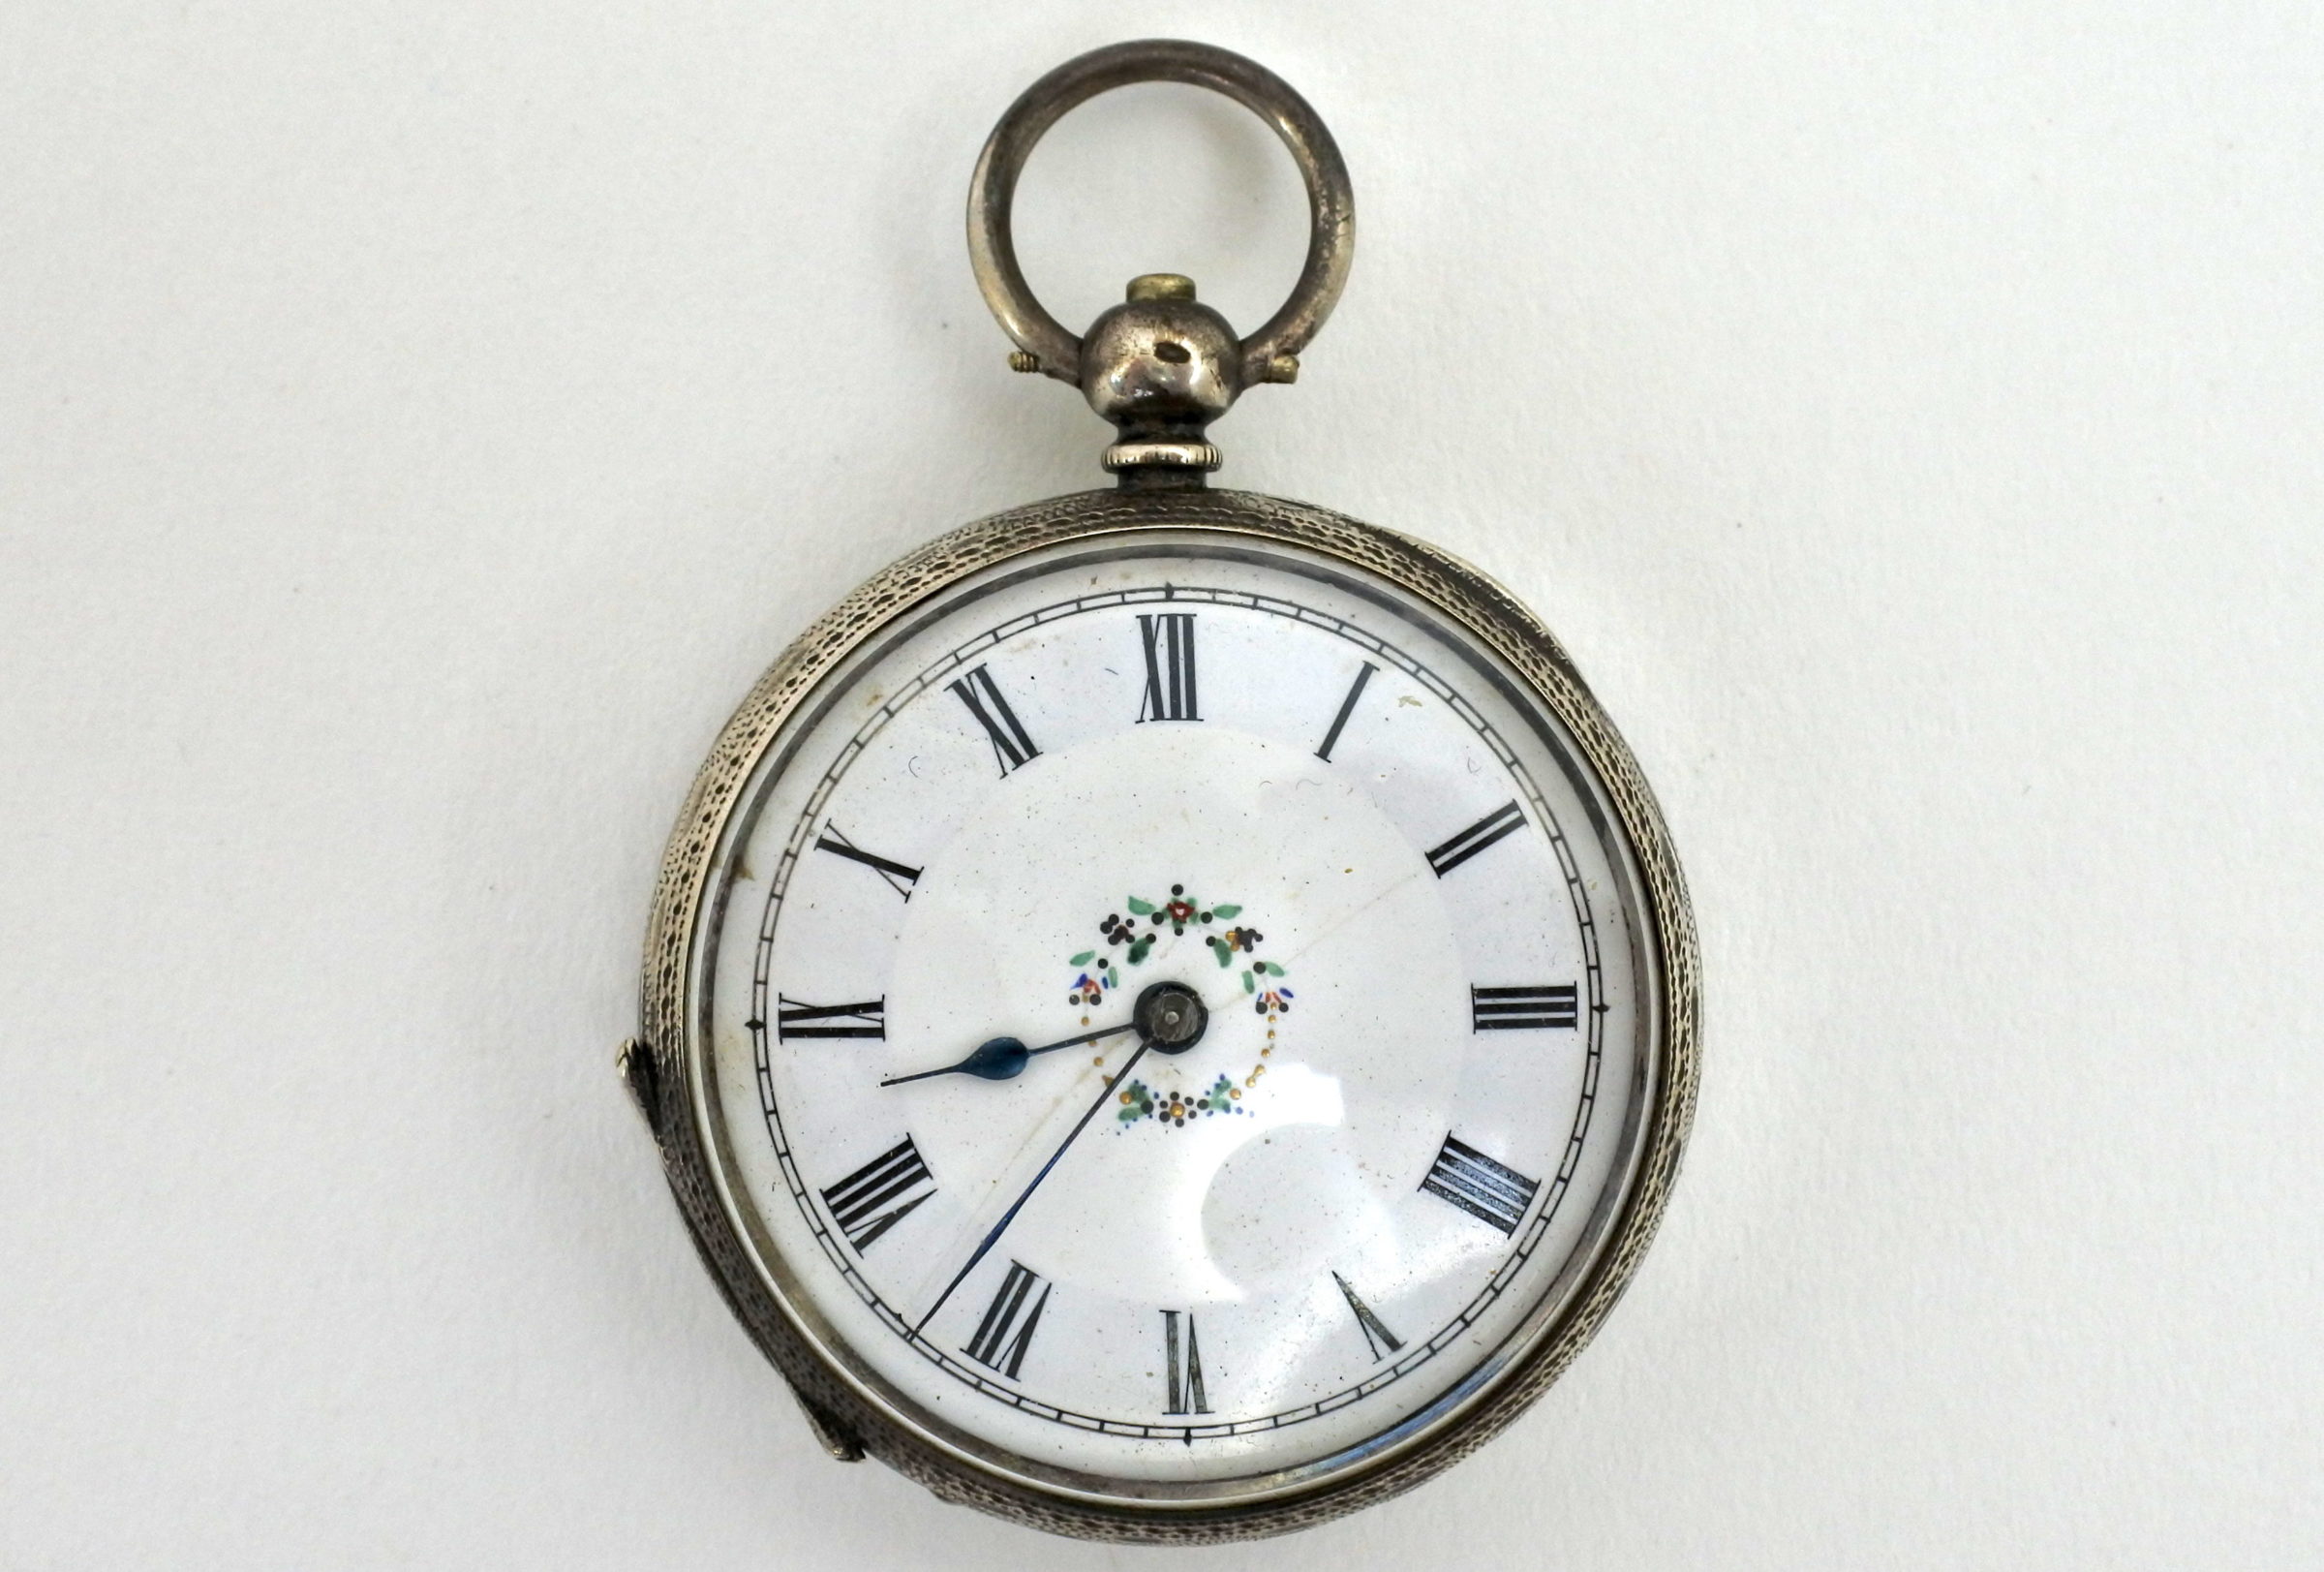 Orologio da tasca in argento con carica a chiavetta. Diametro cassa 40 mm